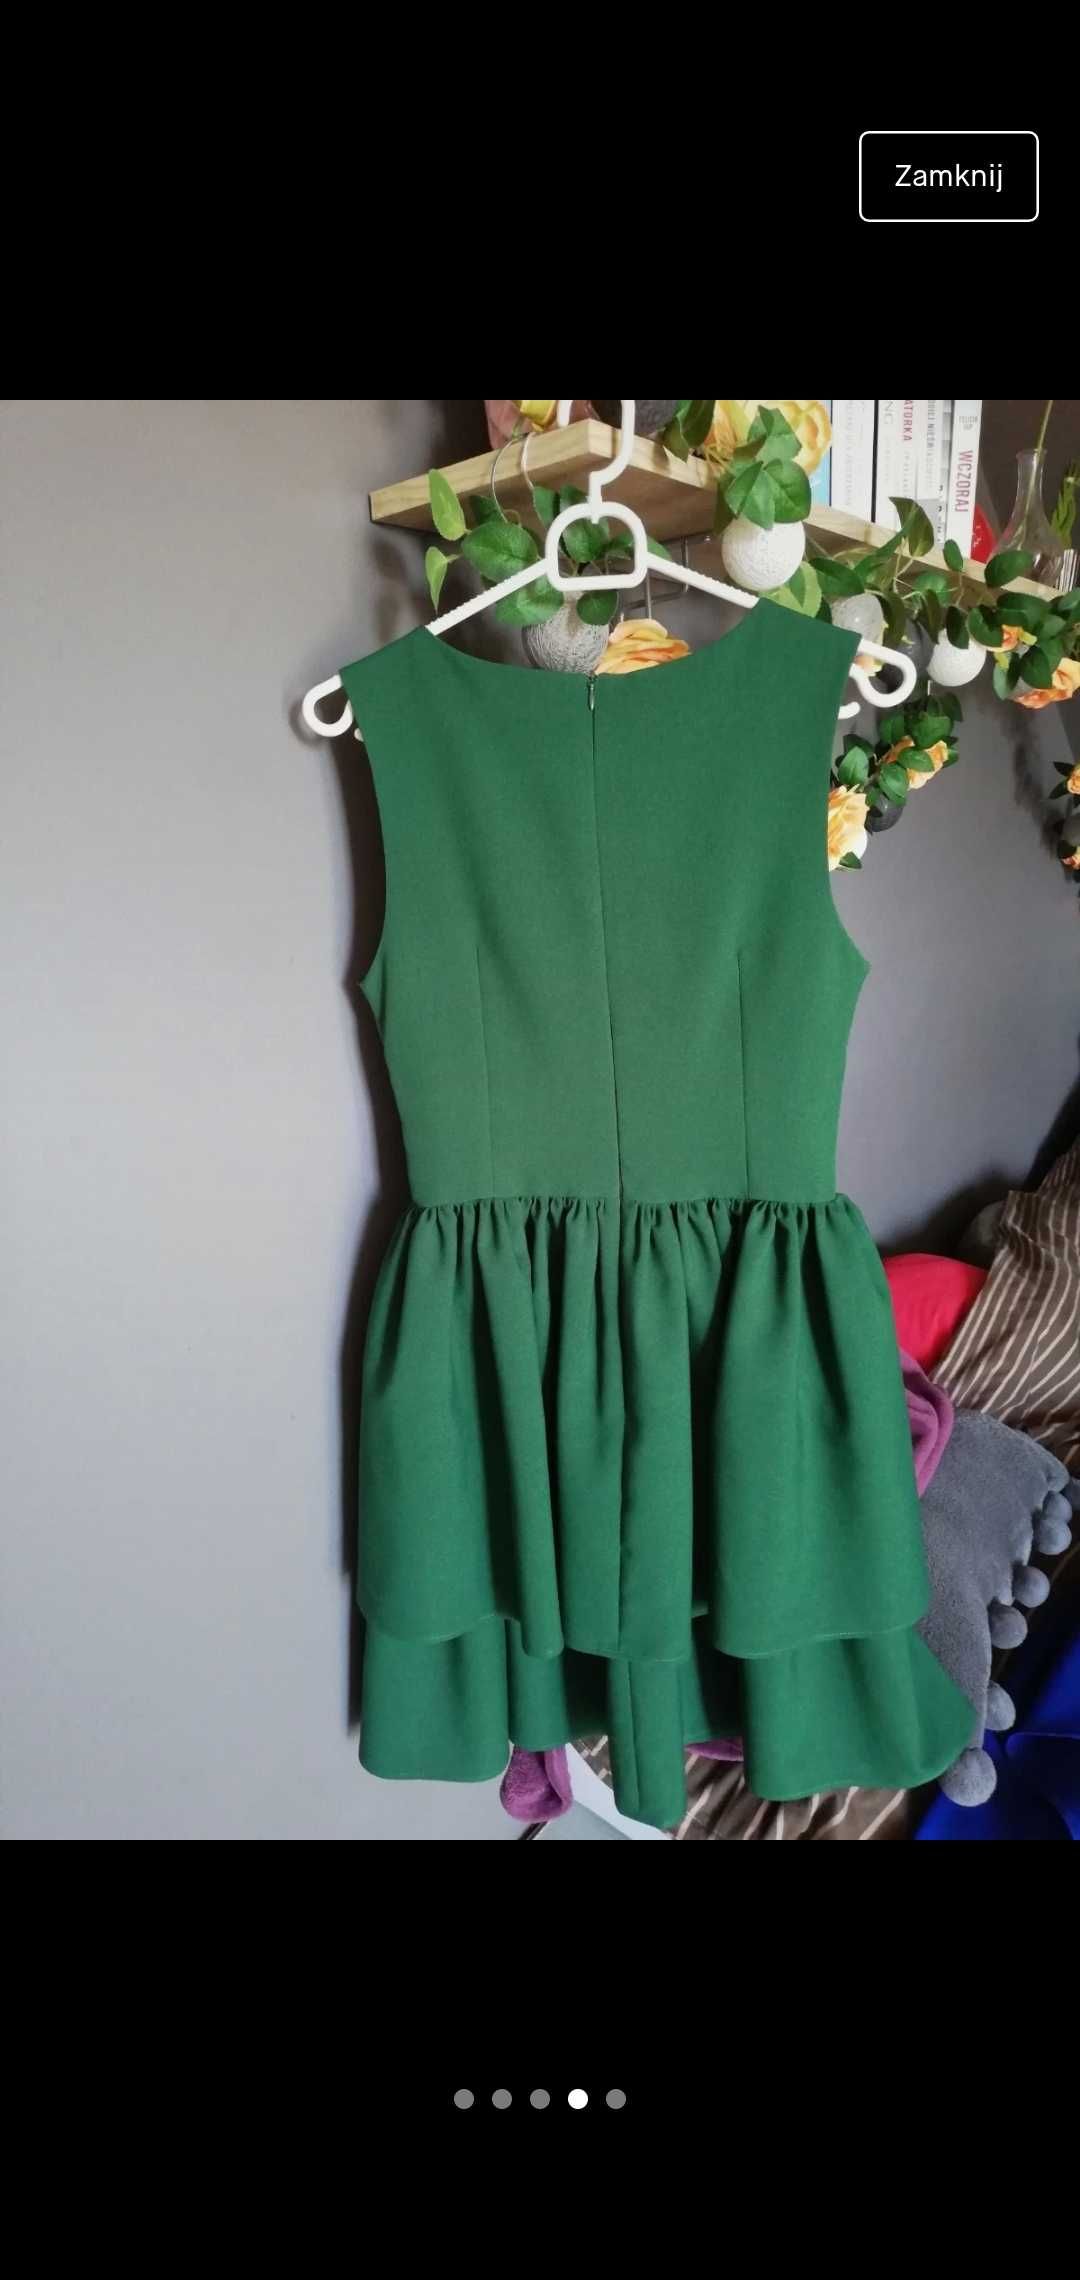 Piękna sukienka mini na imprezę w kolorze butelkowej zieleni